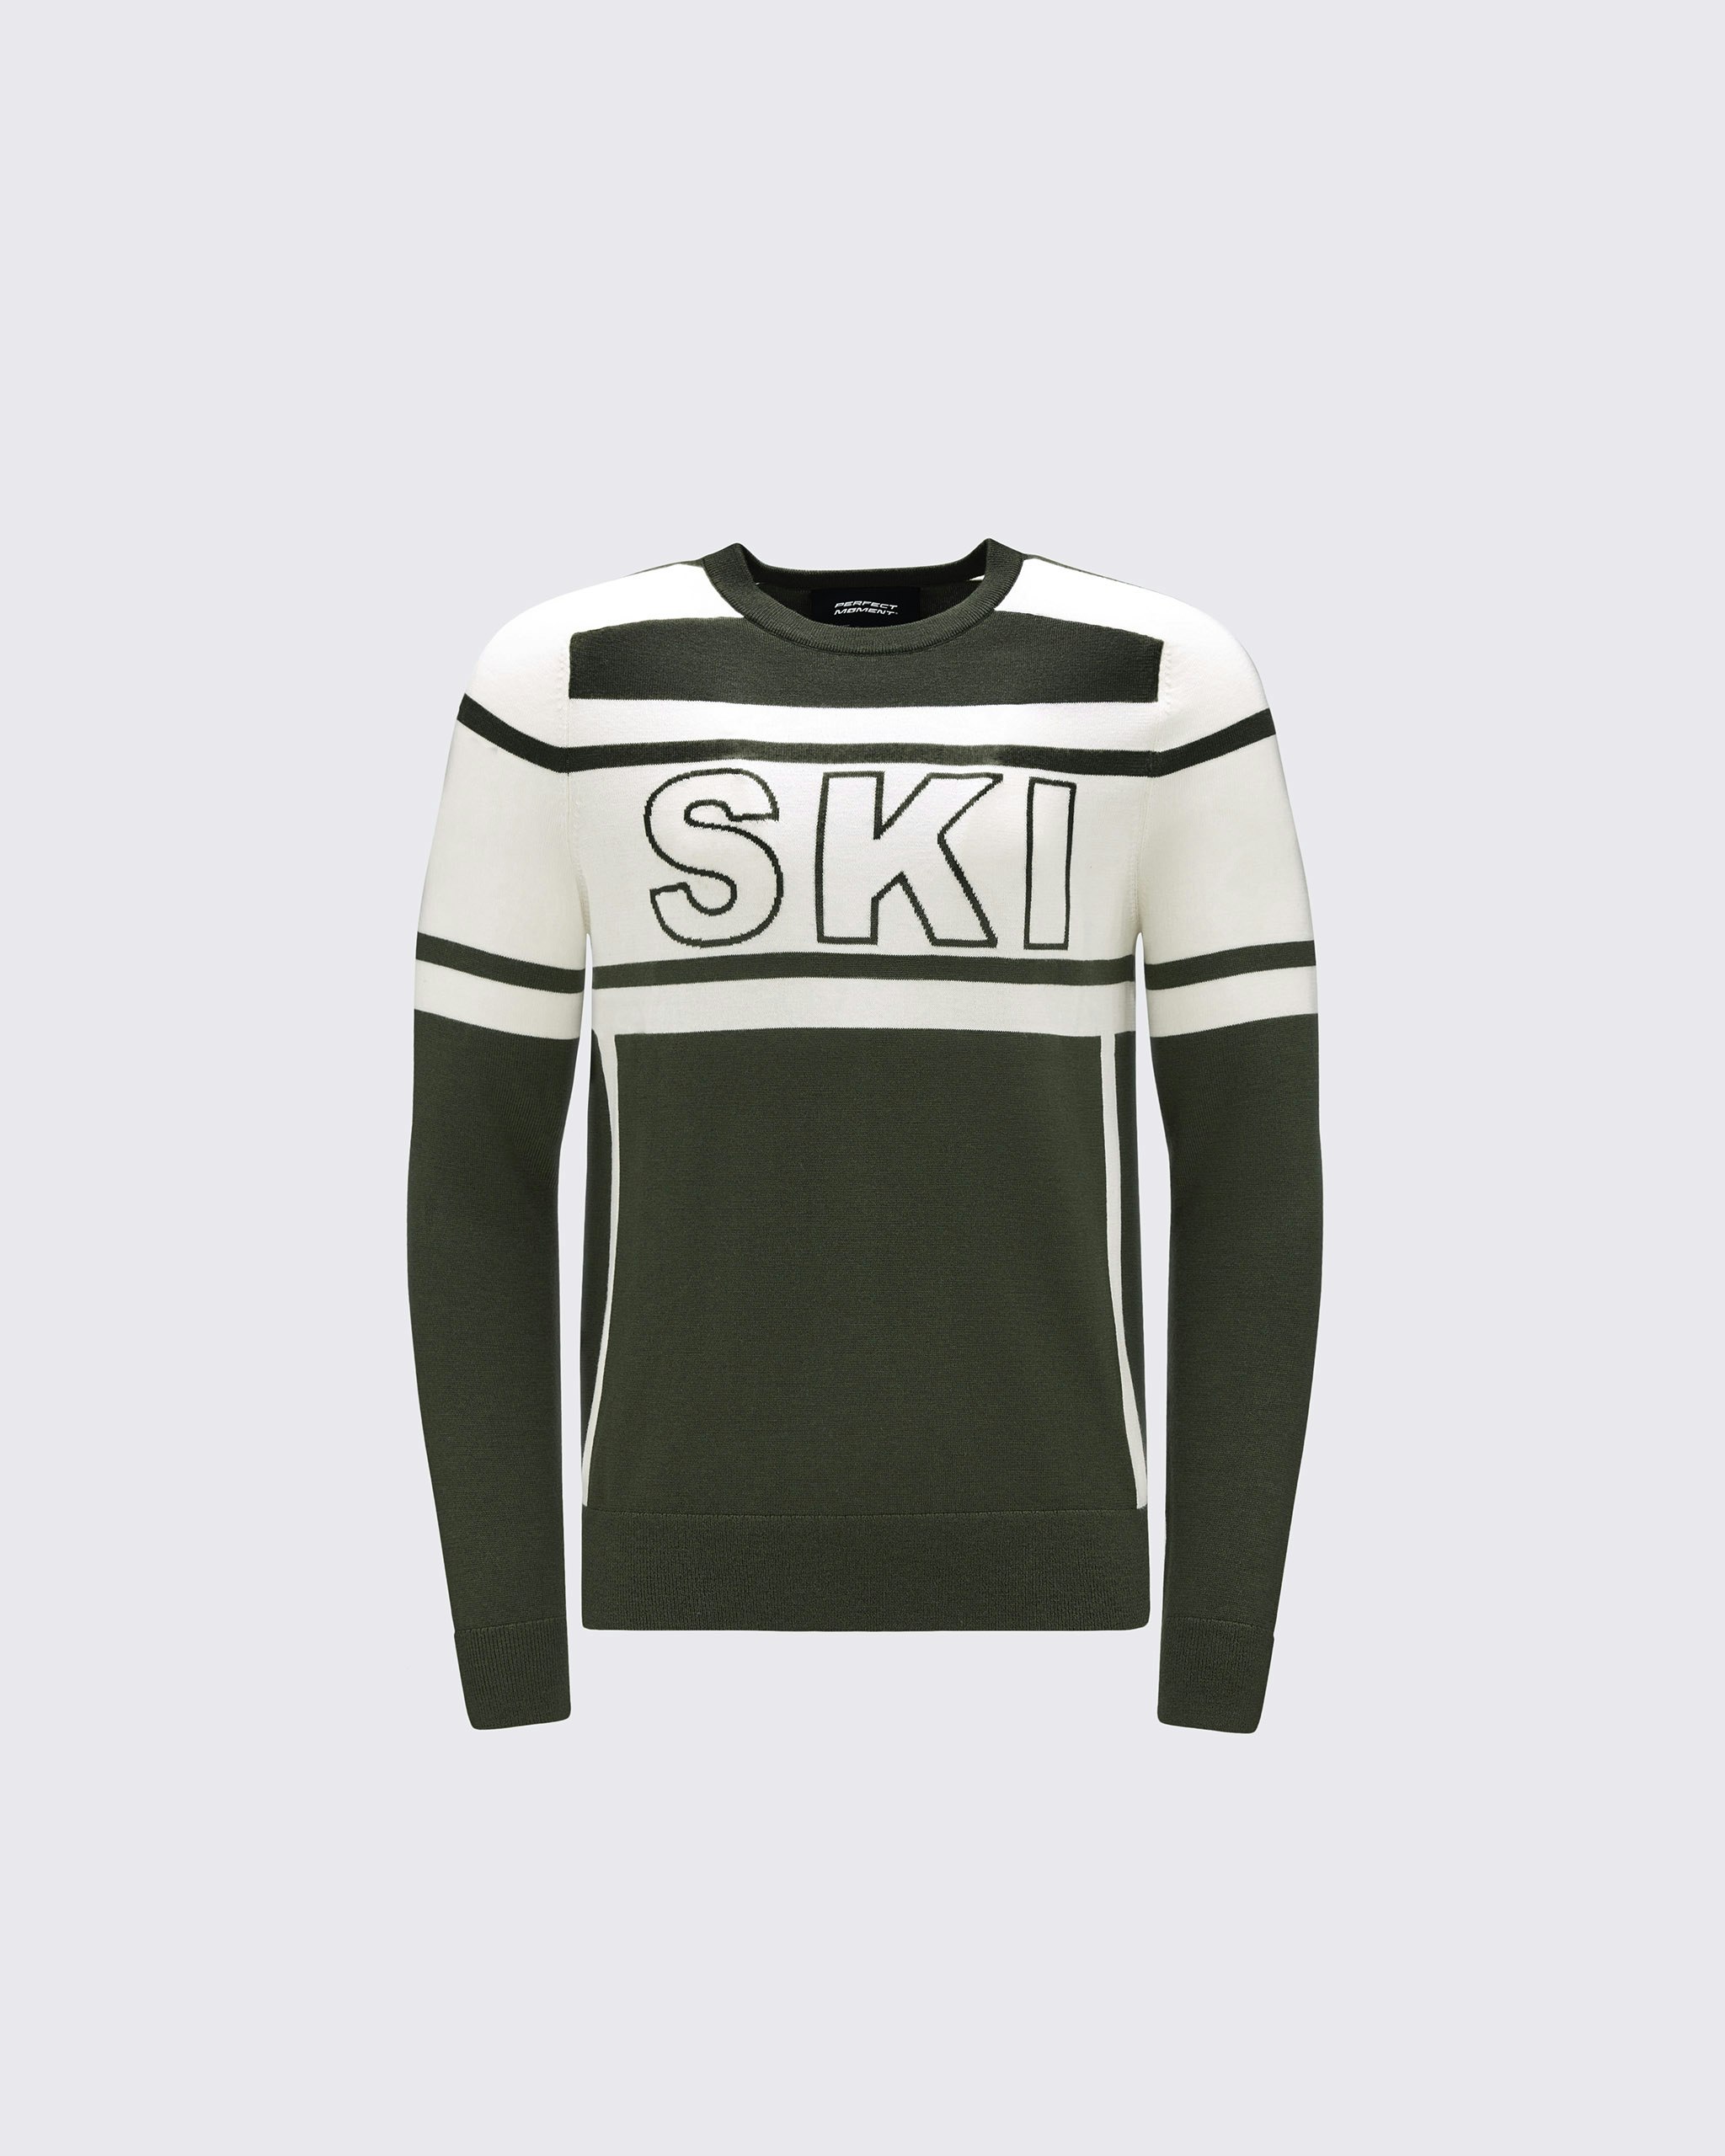 Ski Turtleneck Sweater